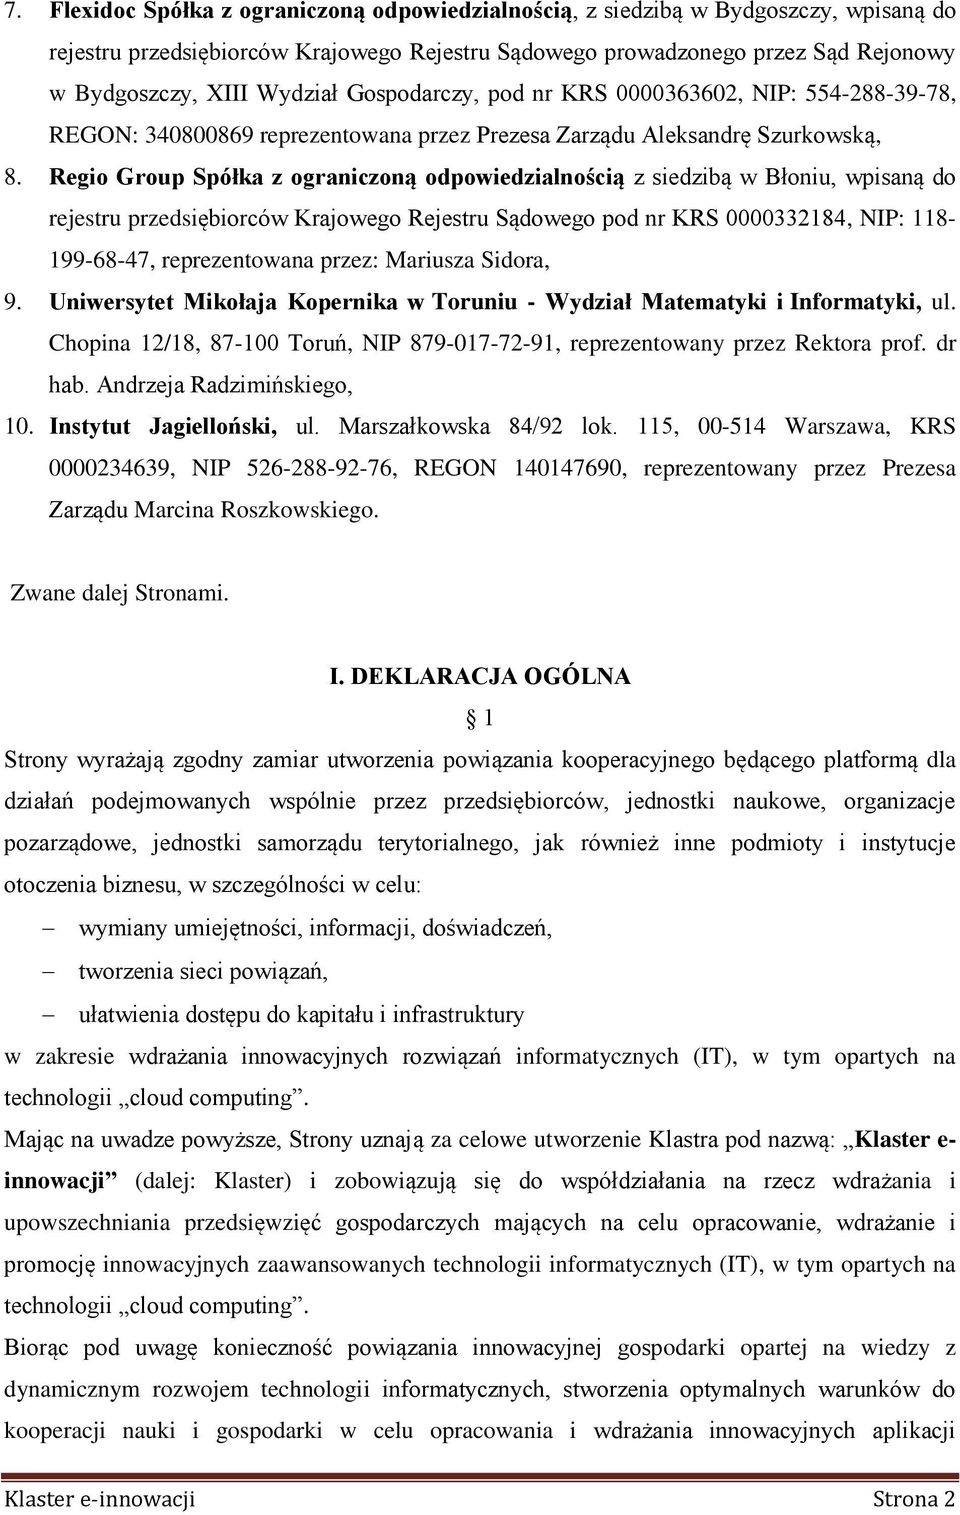 Regio Group Spółka z ograniczoną odpowiedzialnością z siedzibą w Błoniu, wpisaną do rejestru przedsiębiorców Krajowego Rejestru Sądowego pod nr KRS 0000332184, NIP: 118-199-68-47, reprezentowana